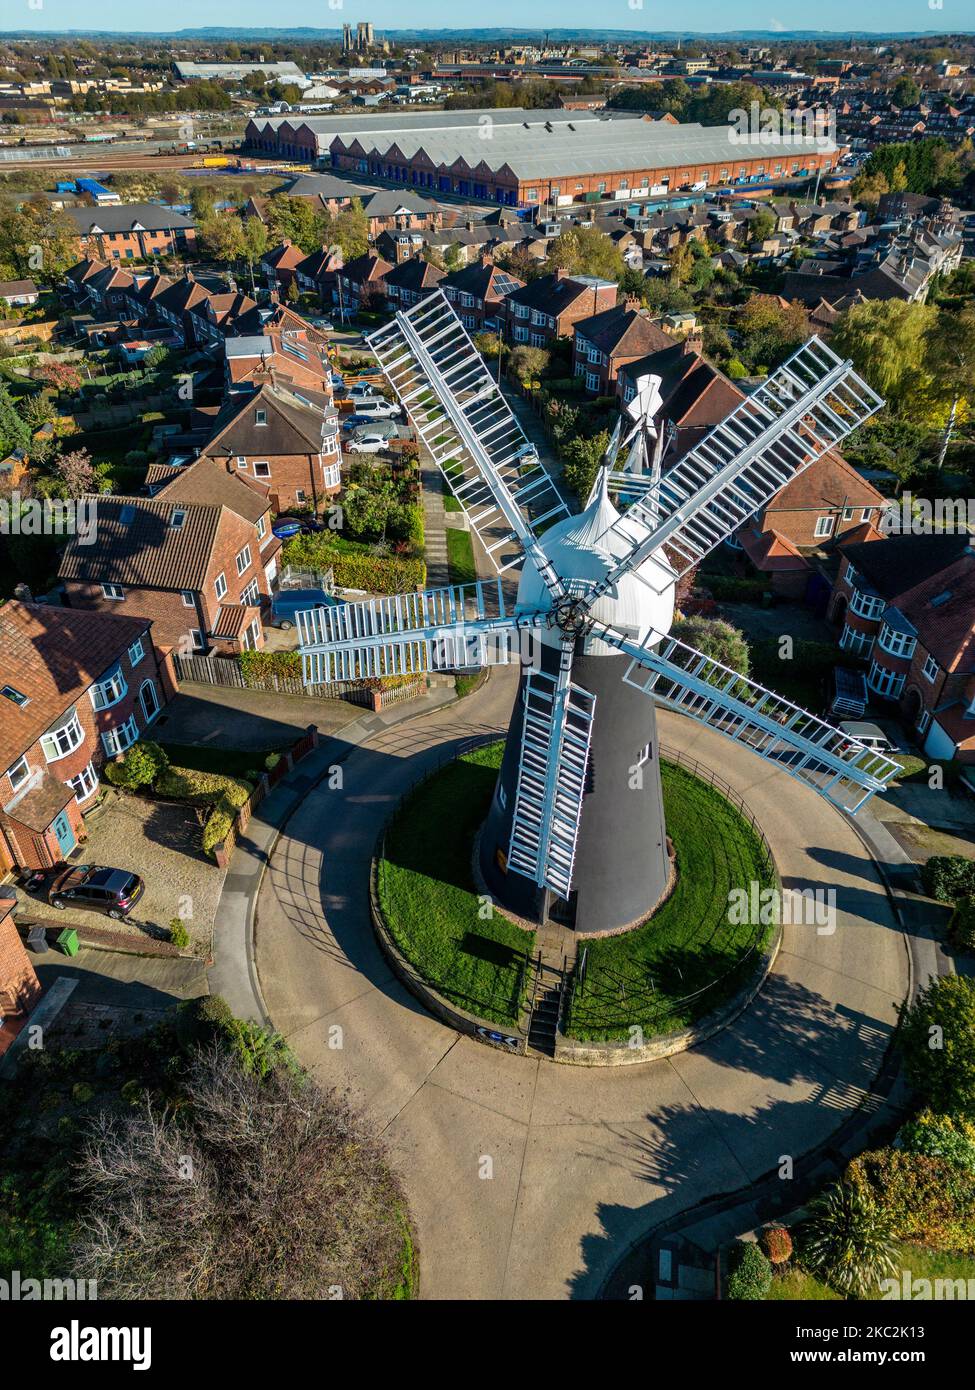 Holgate Windmill en la ciudad de York en el Reino Unido. Construido en 1770. Tras la restauración, la fábrica está en pleno funcionamiento. York Minster Foto de stock